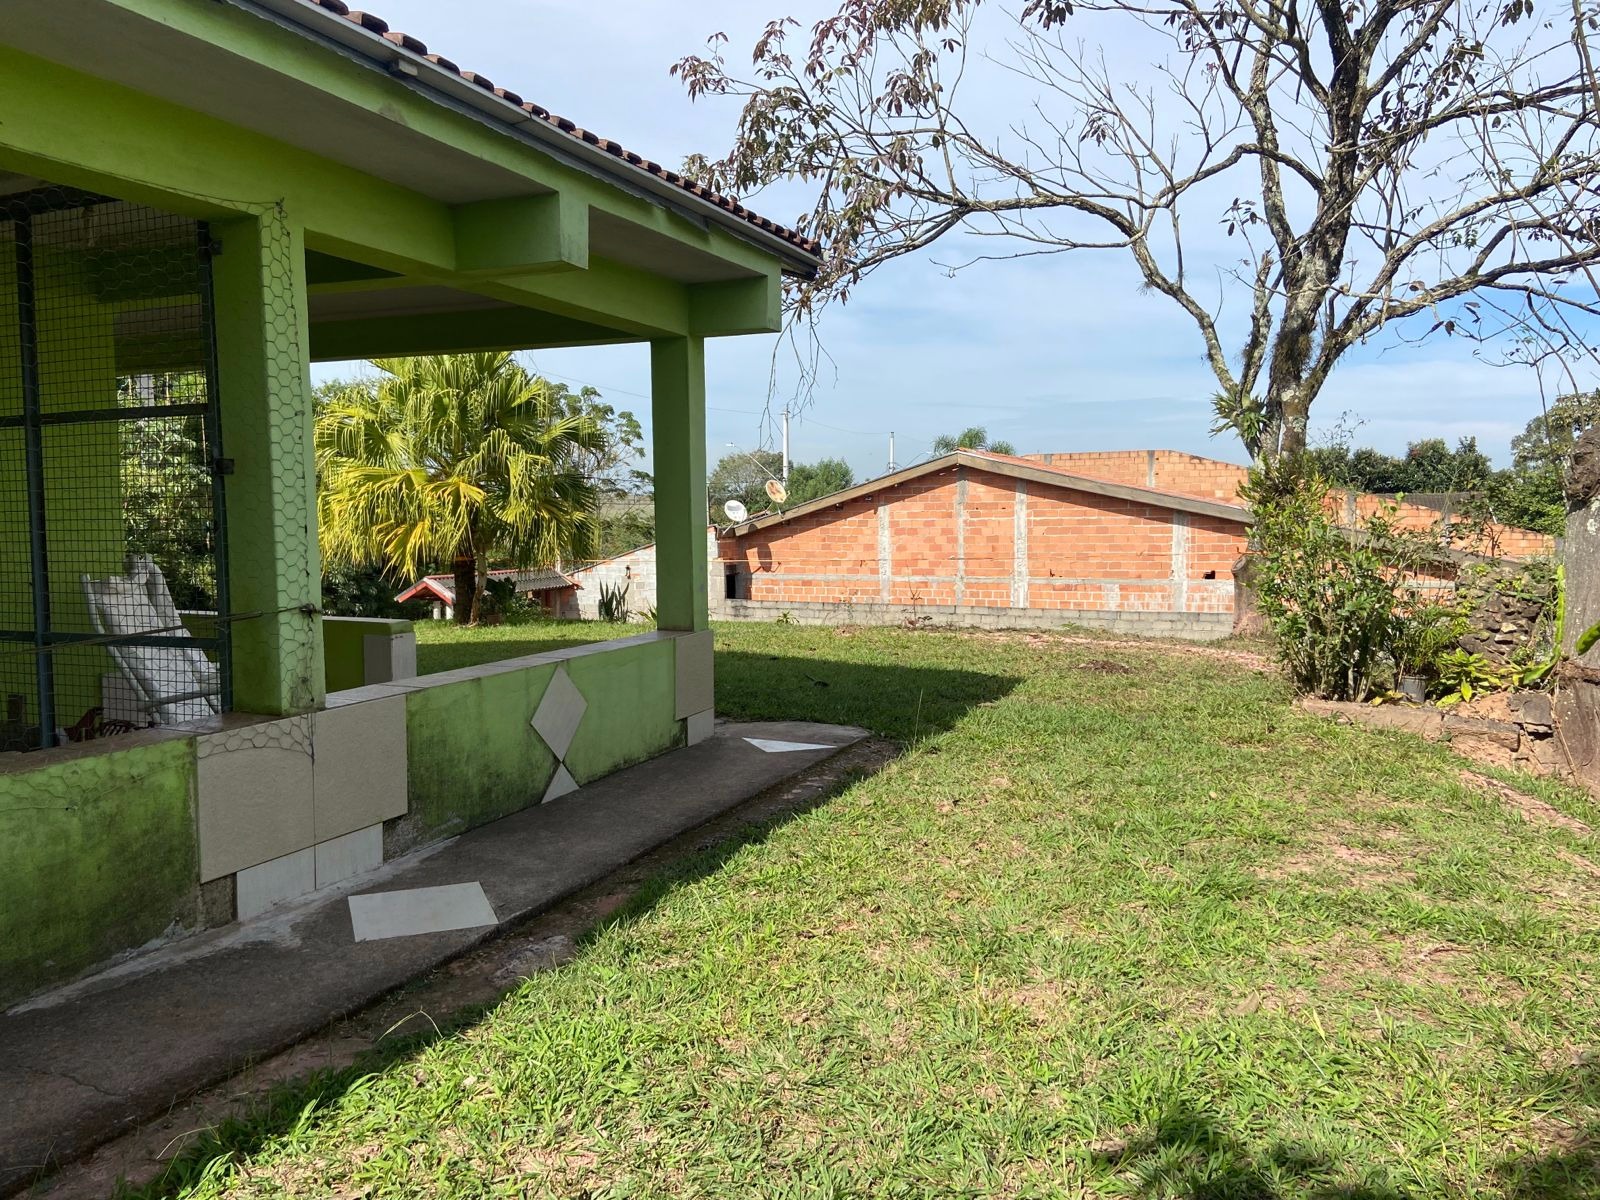 Chácara de 5.800 m² em São José dos Campos, SP